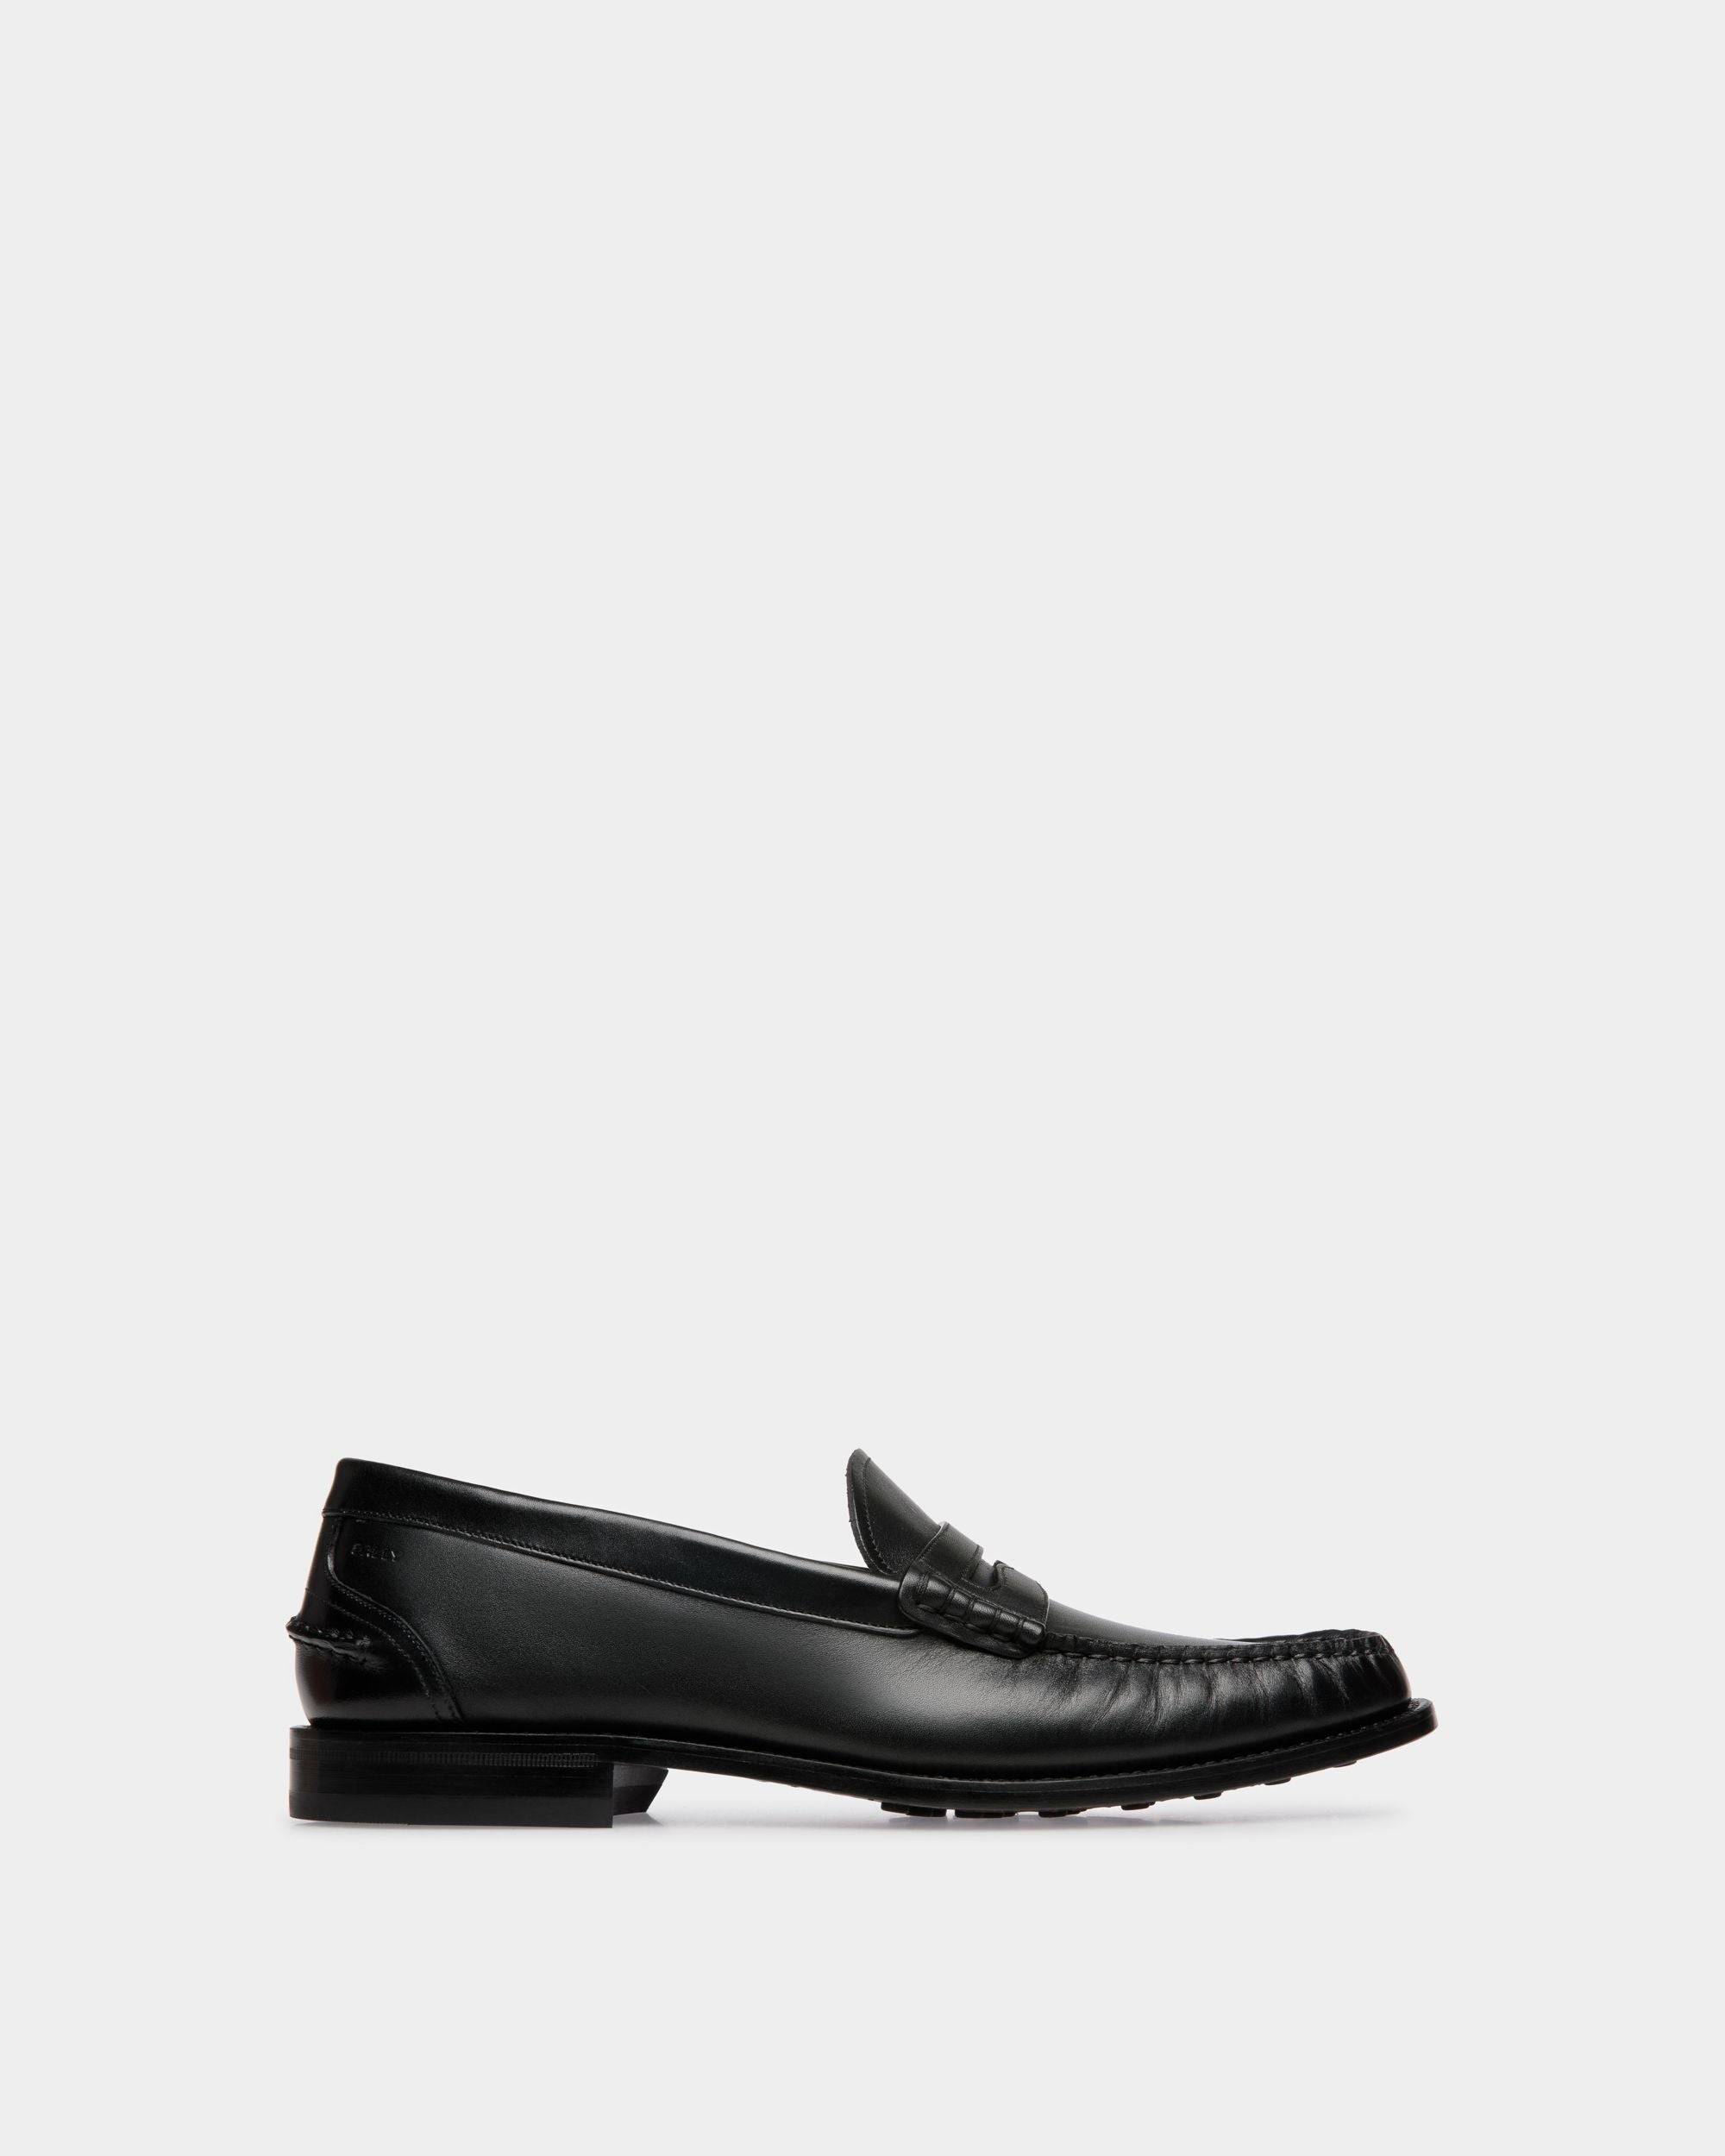 Oregon | Herren-Loafer aus schwarzem Leder | Bally | Still Life Seite